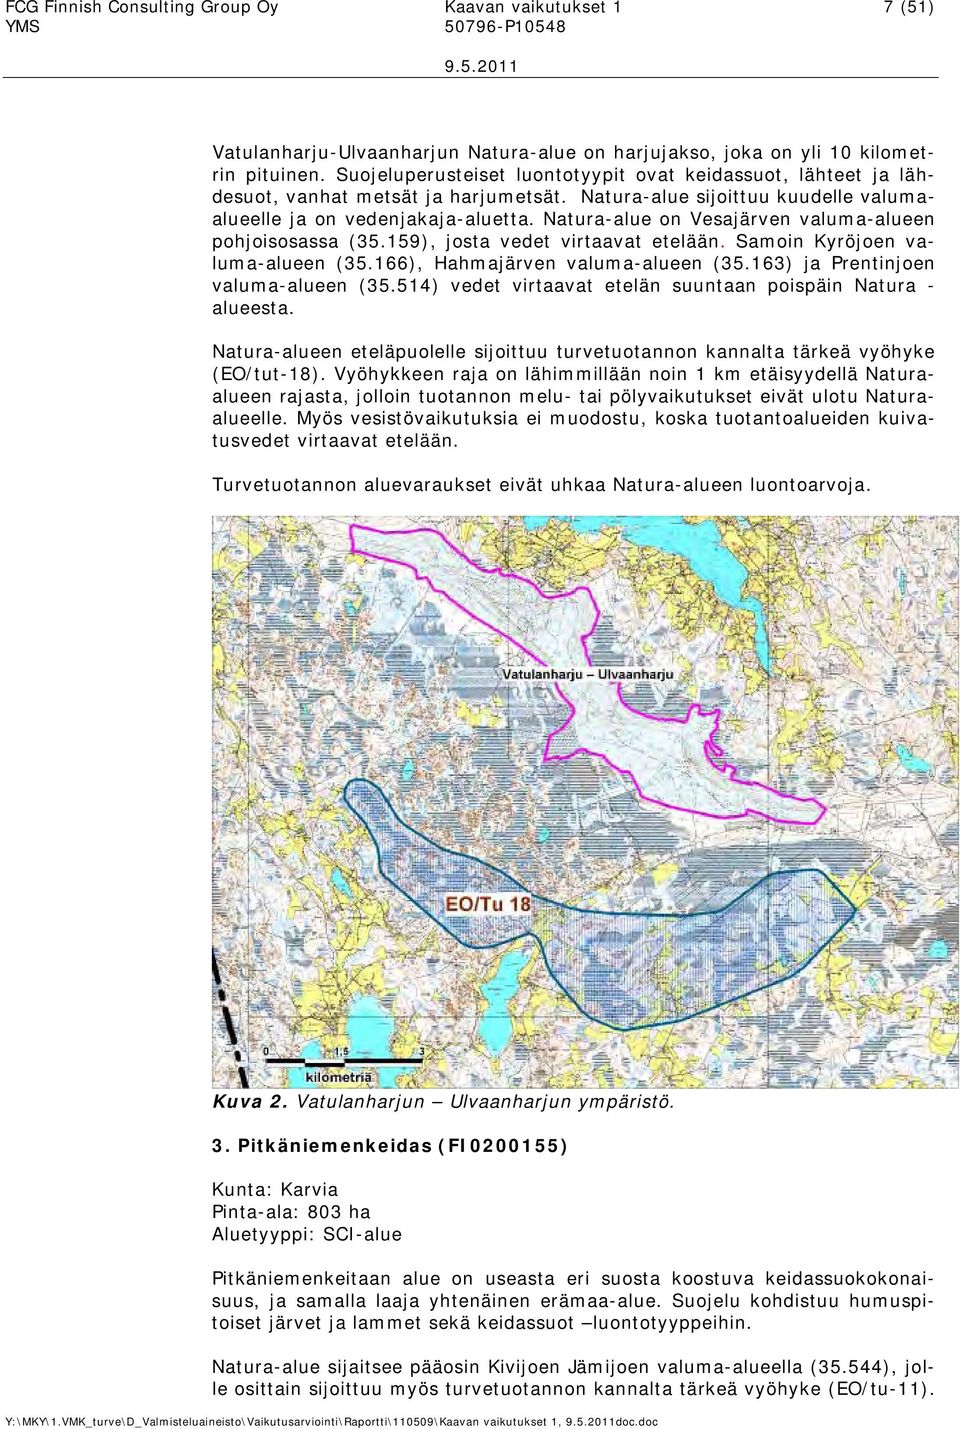 Natura-alue on Vesajärven valuma-alueen pohjoisosassa (35.159, josta vedet virtaavat etelään. Samoin Kyröjoen valuma-alueen (35.166, Hahmajärven valuma-alueen (35.163 ja Prentinjoen valuma-alueen (35.